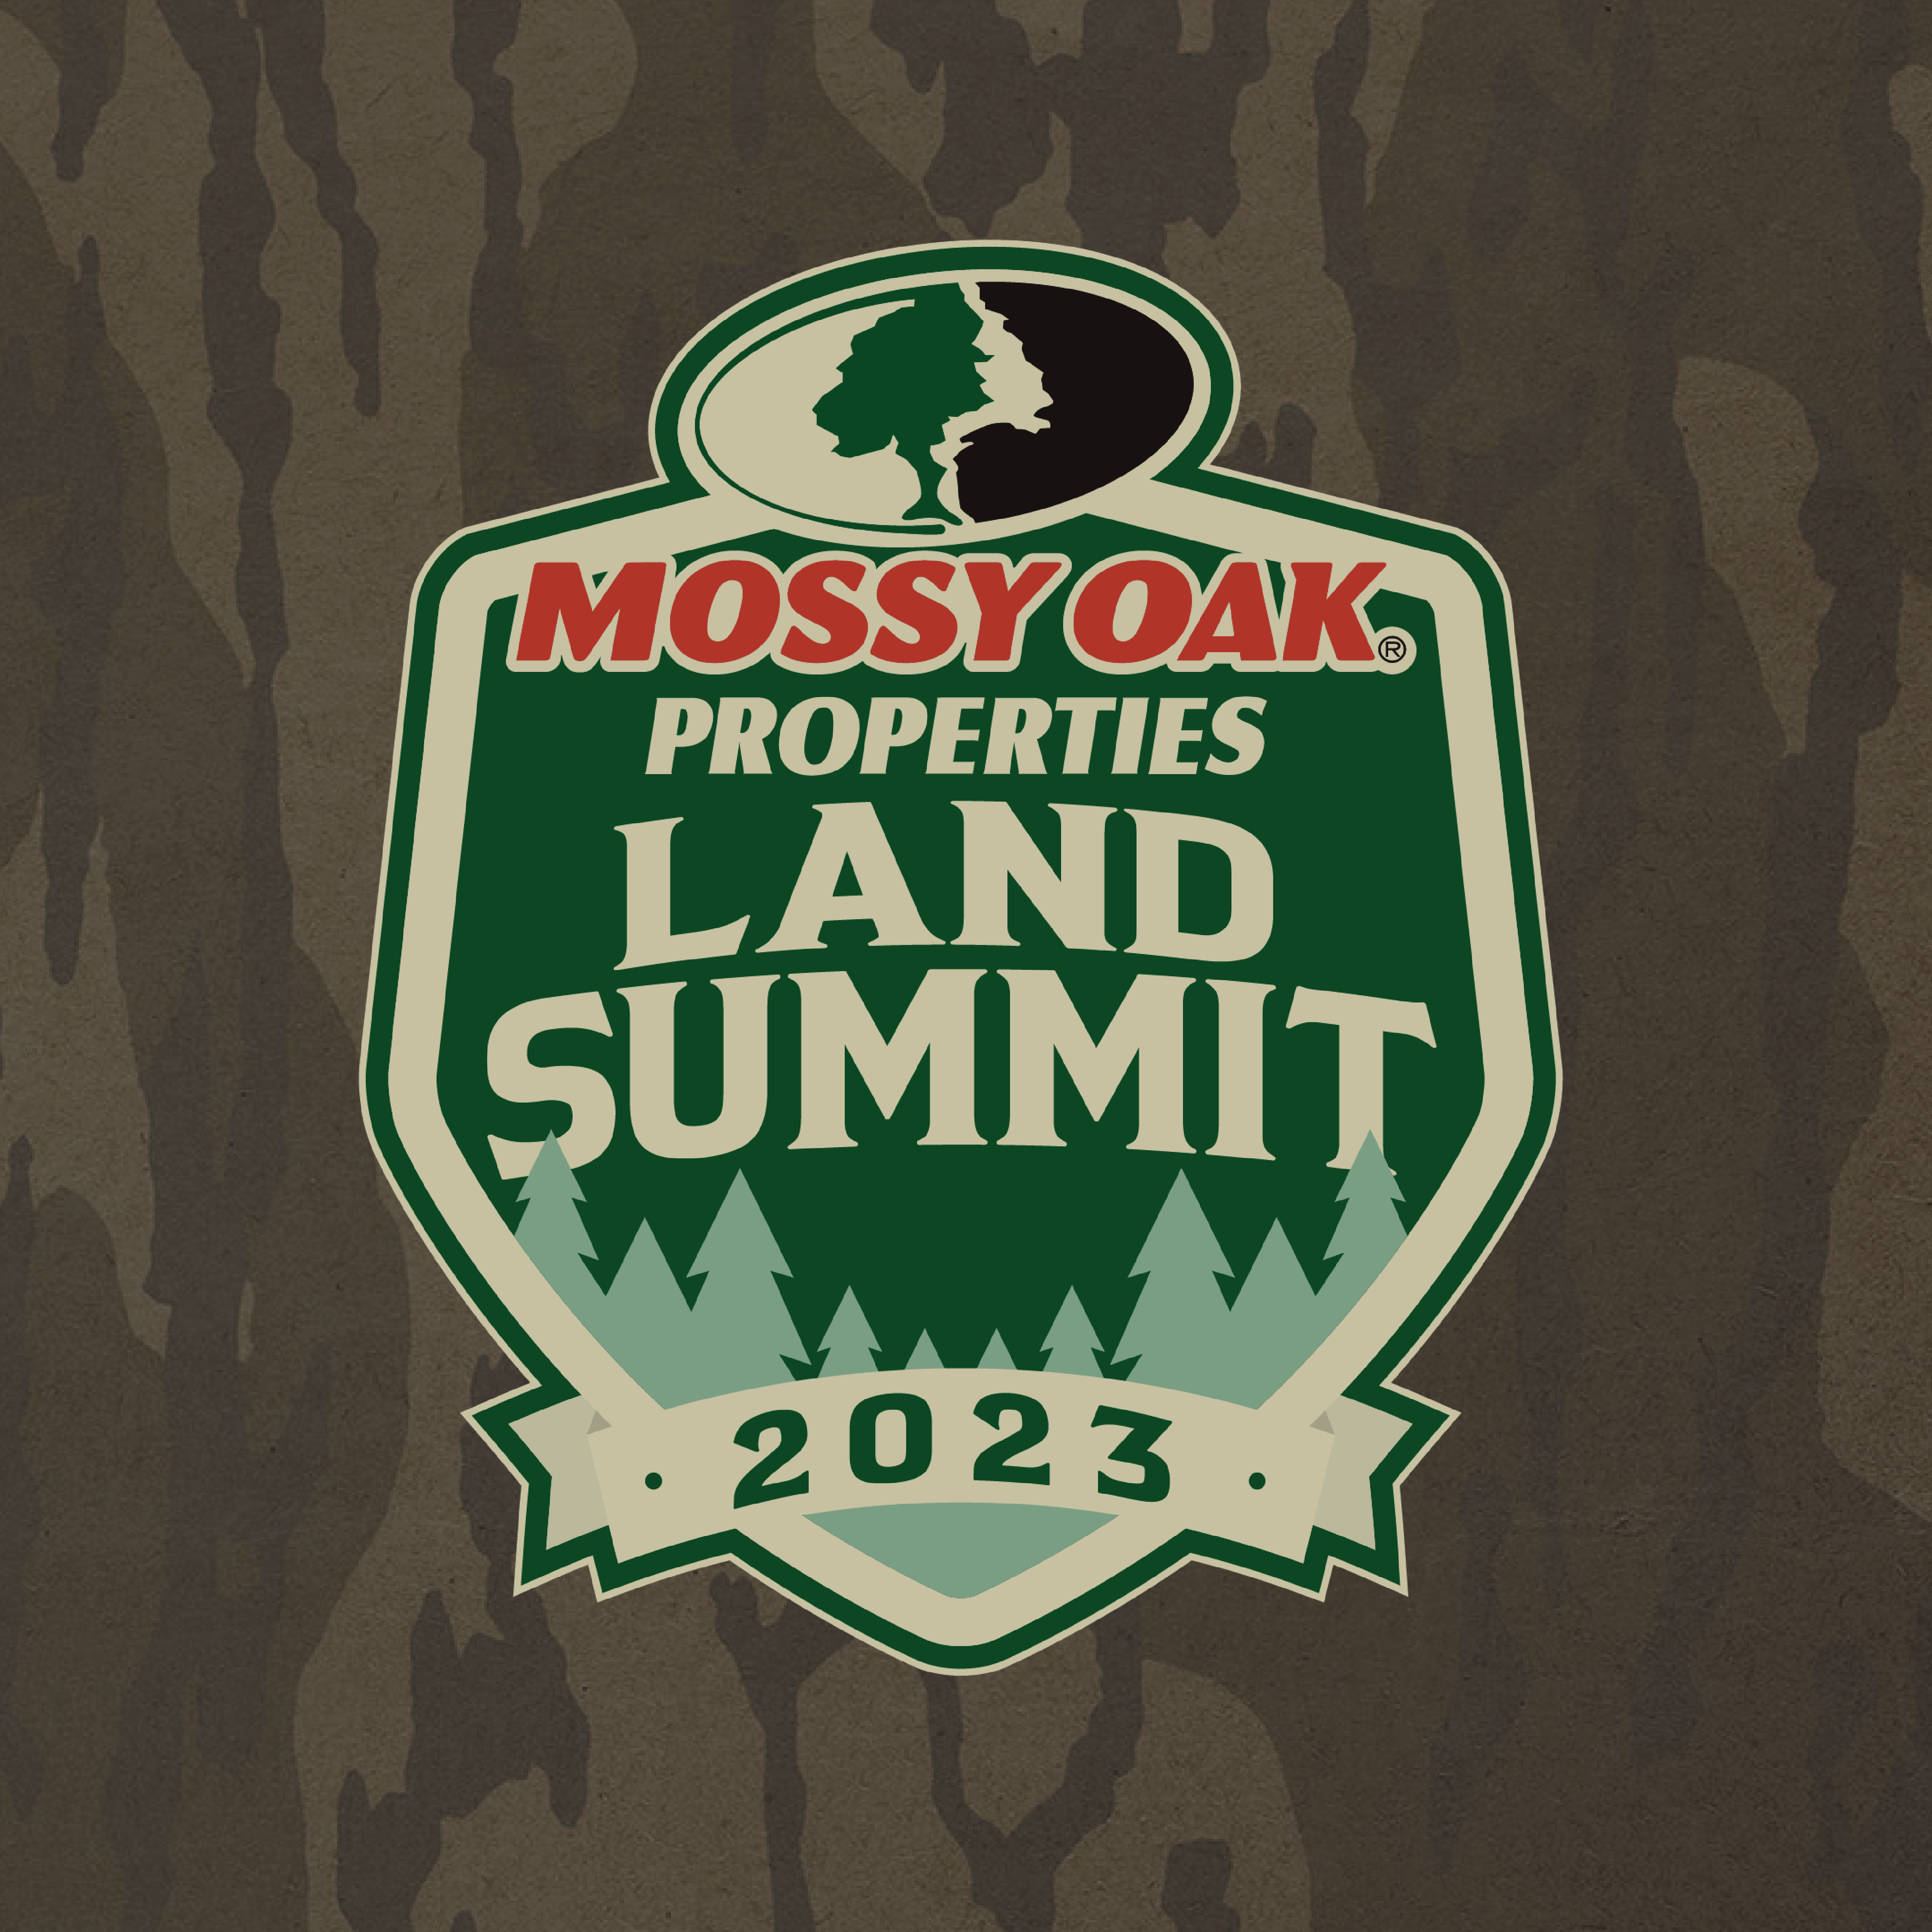 Land Summit 2023